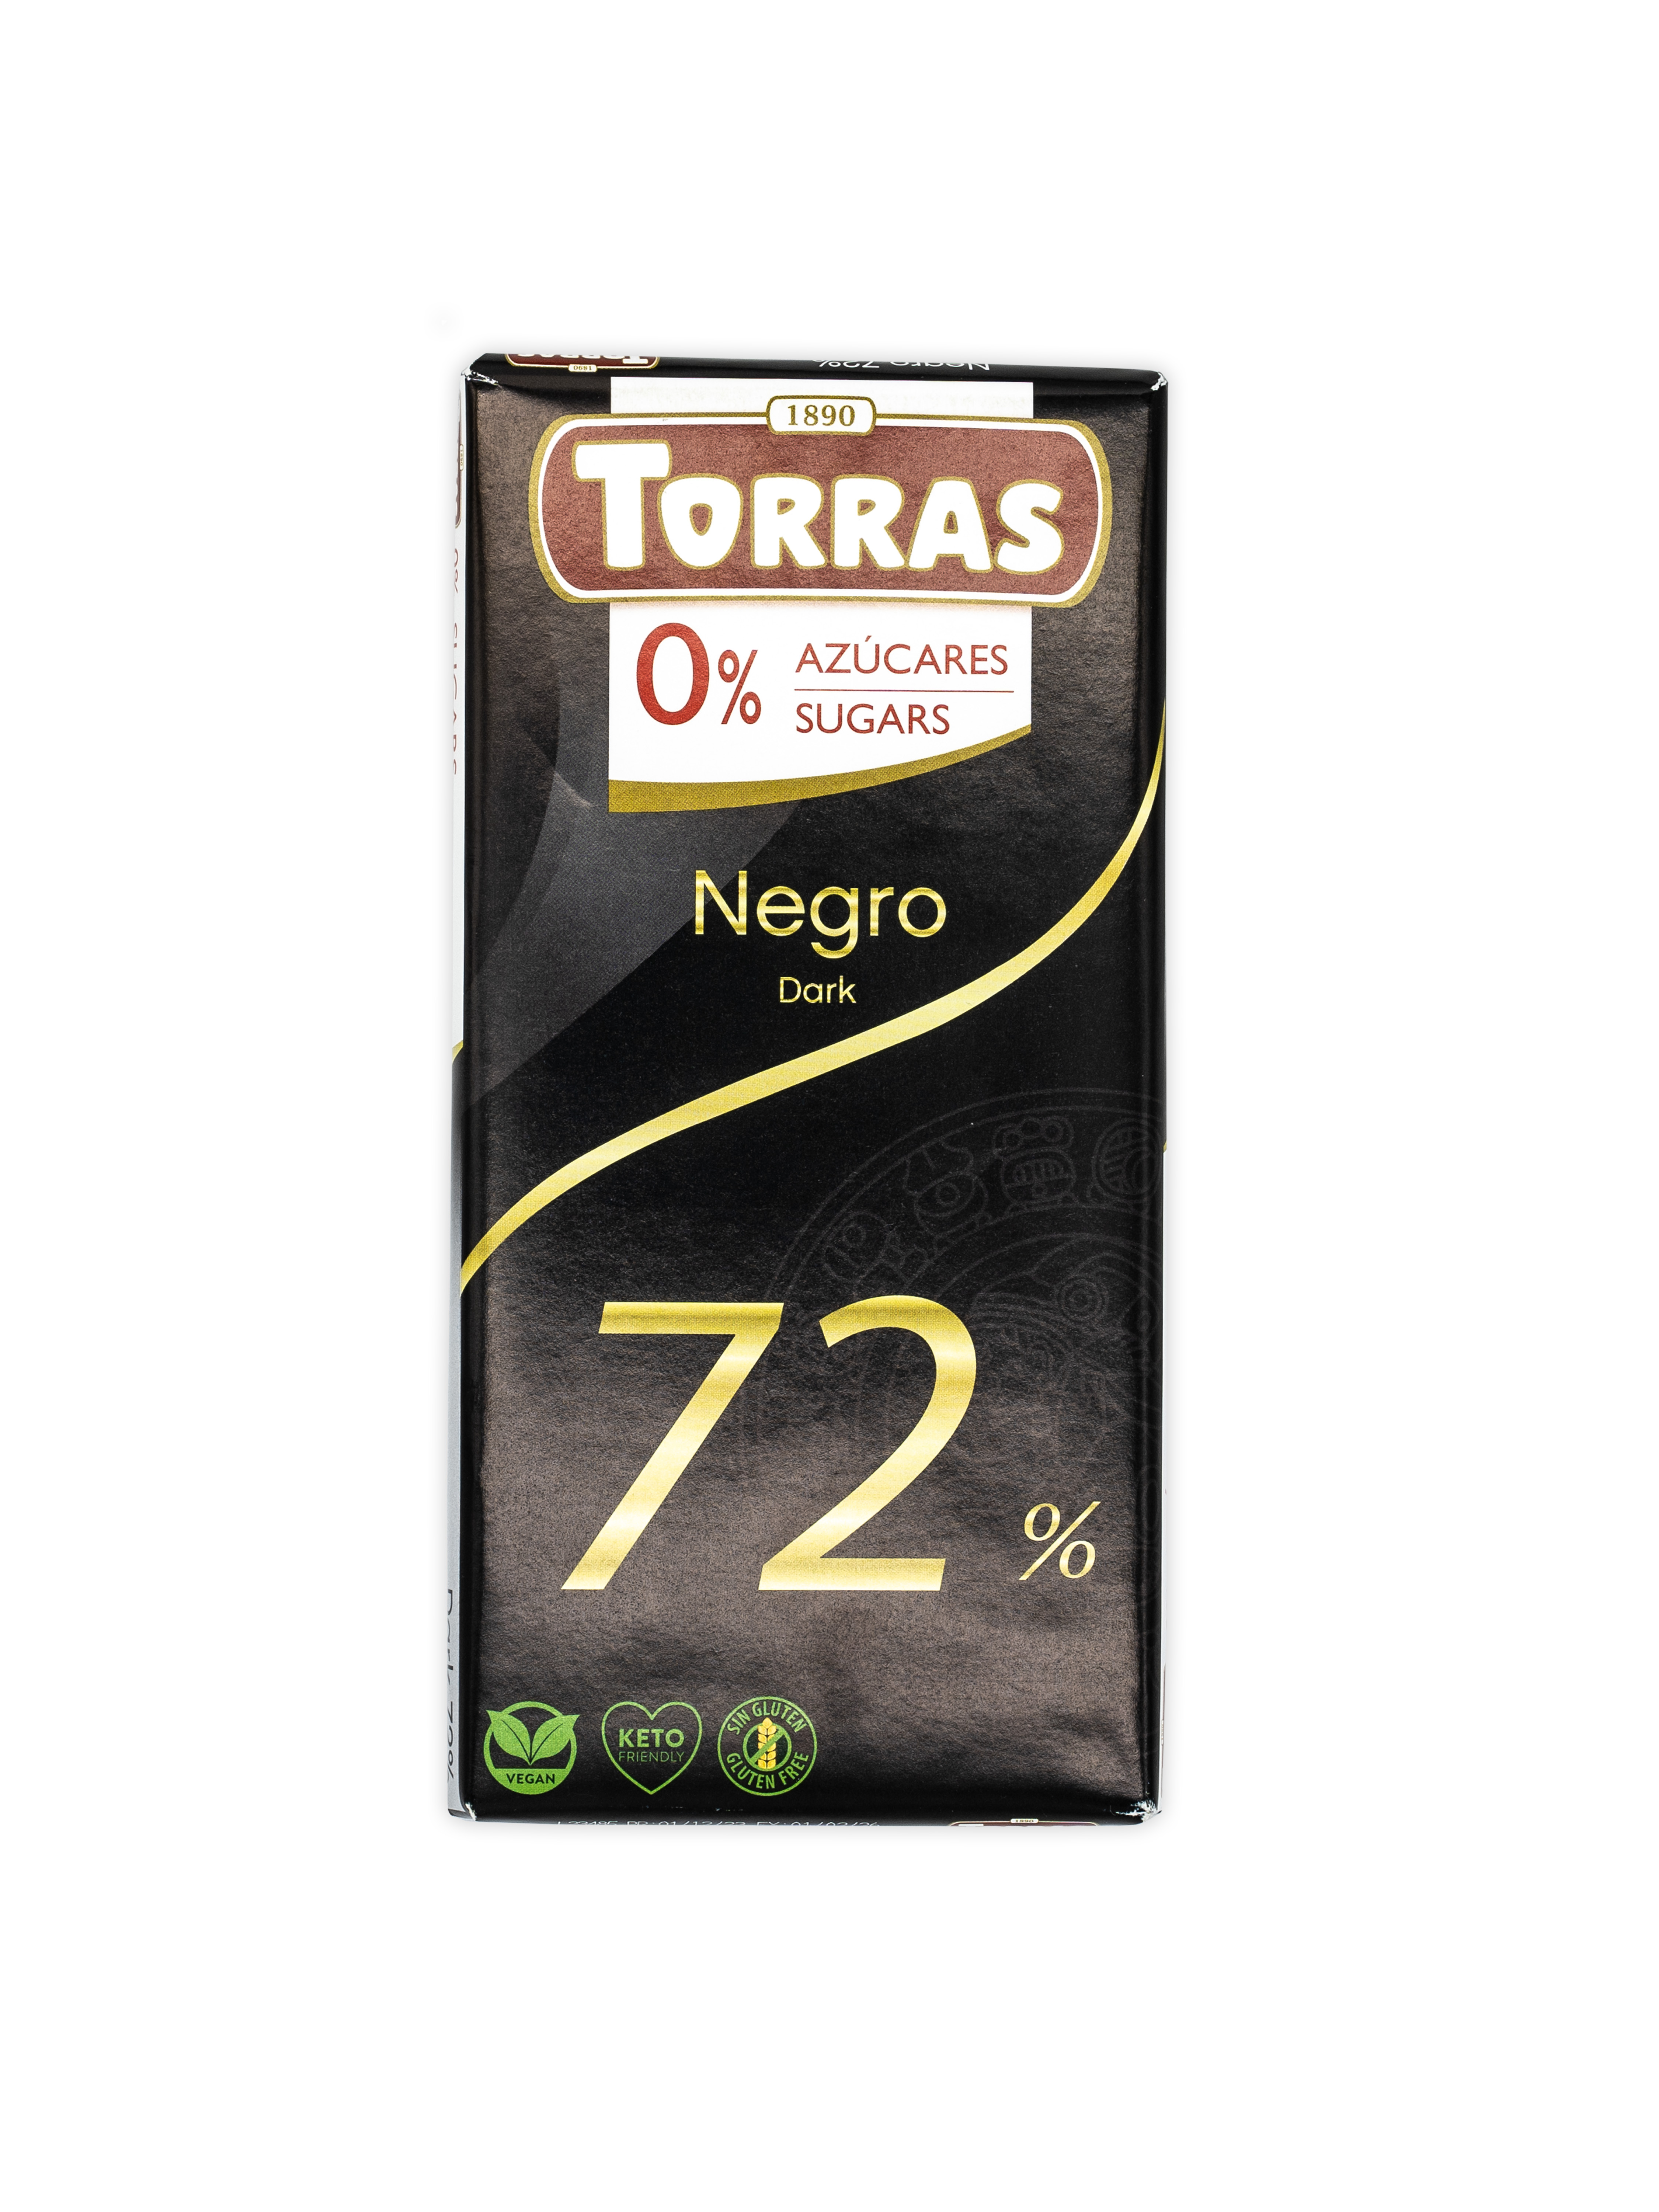 Torras_Negro Dark 72_front